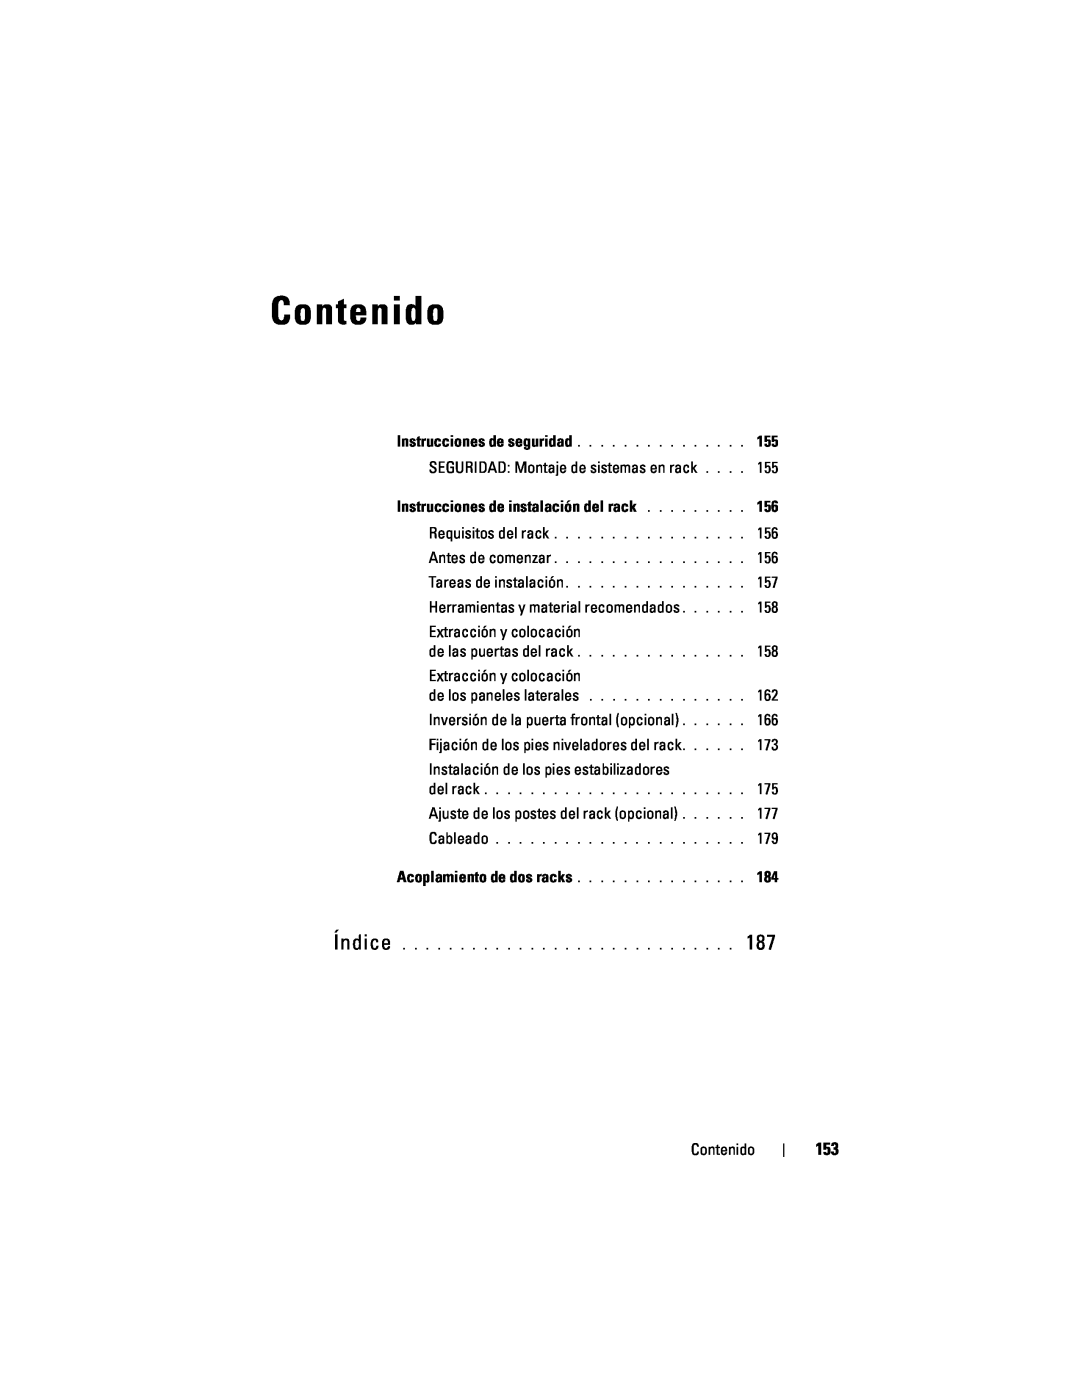 Dell 4220 manual Contenido, SEGURIDAD Montaje de sistemas en rack, Herramientas y material recomendados 